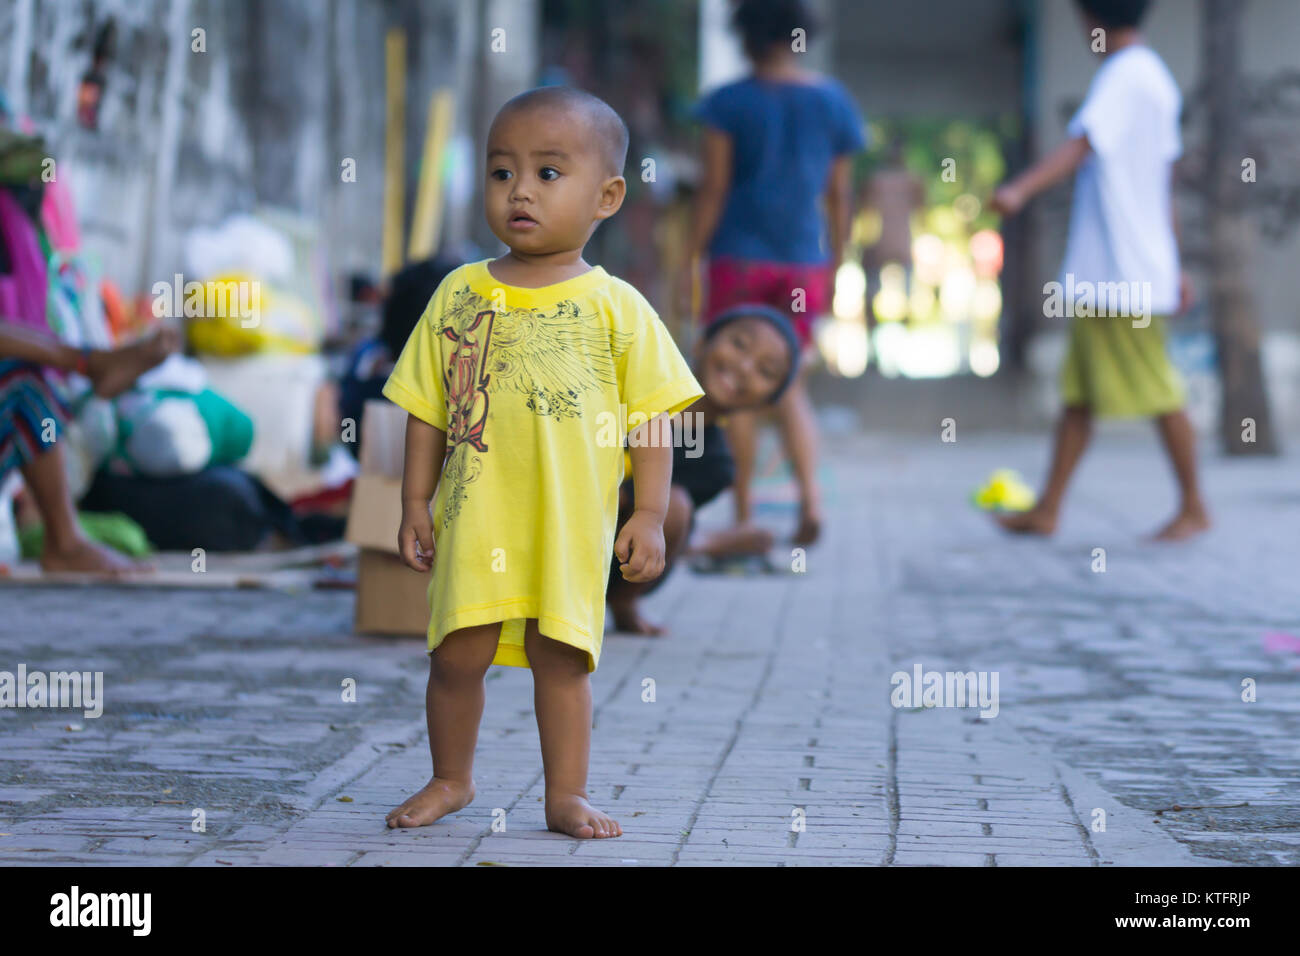 Cebu City, Filippine. 25 Dic, 2017. Un bambino senzatetto camminando sul marciapiede sul giorno di Natale mattina 2017,Cebu, Filippine Credito: galleria immagini2/Alamy Live News Foto Stock